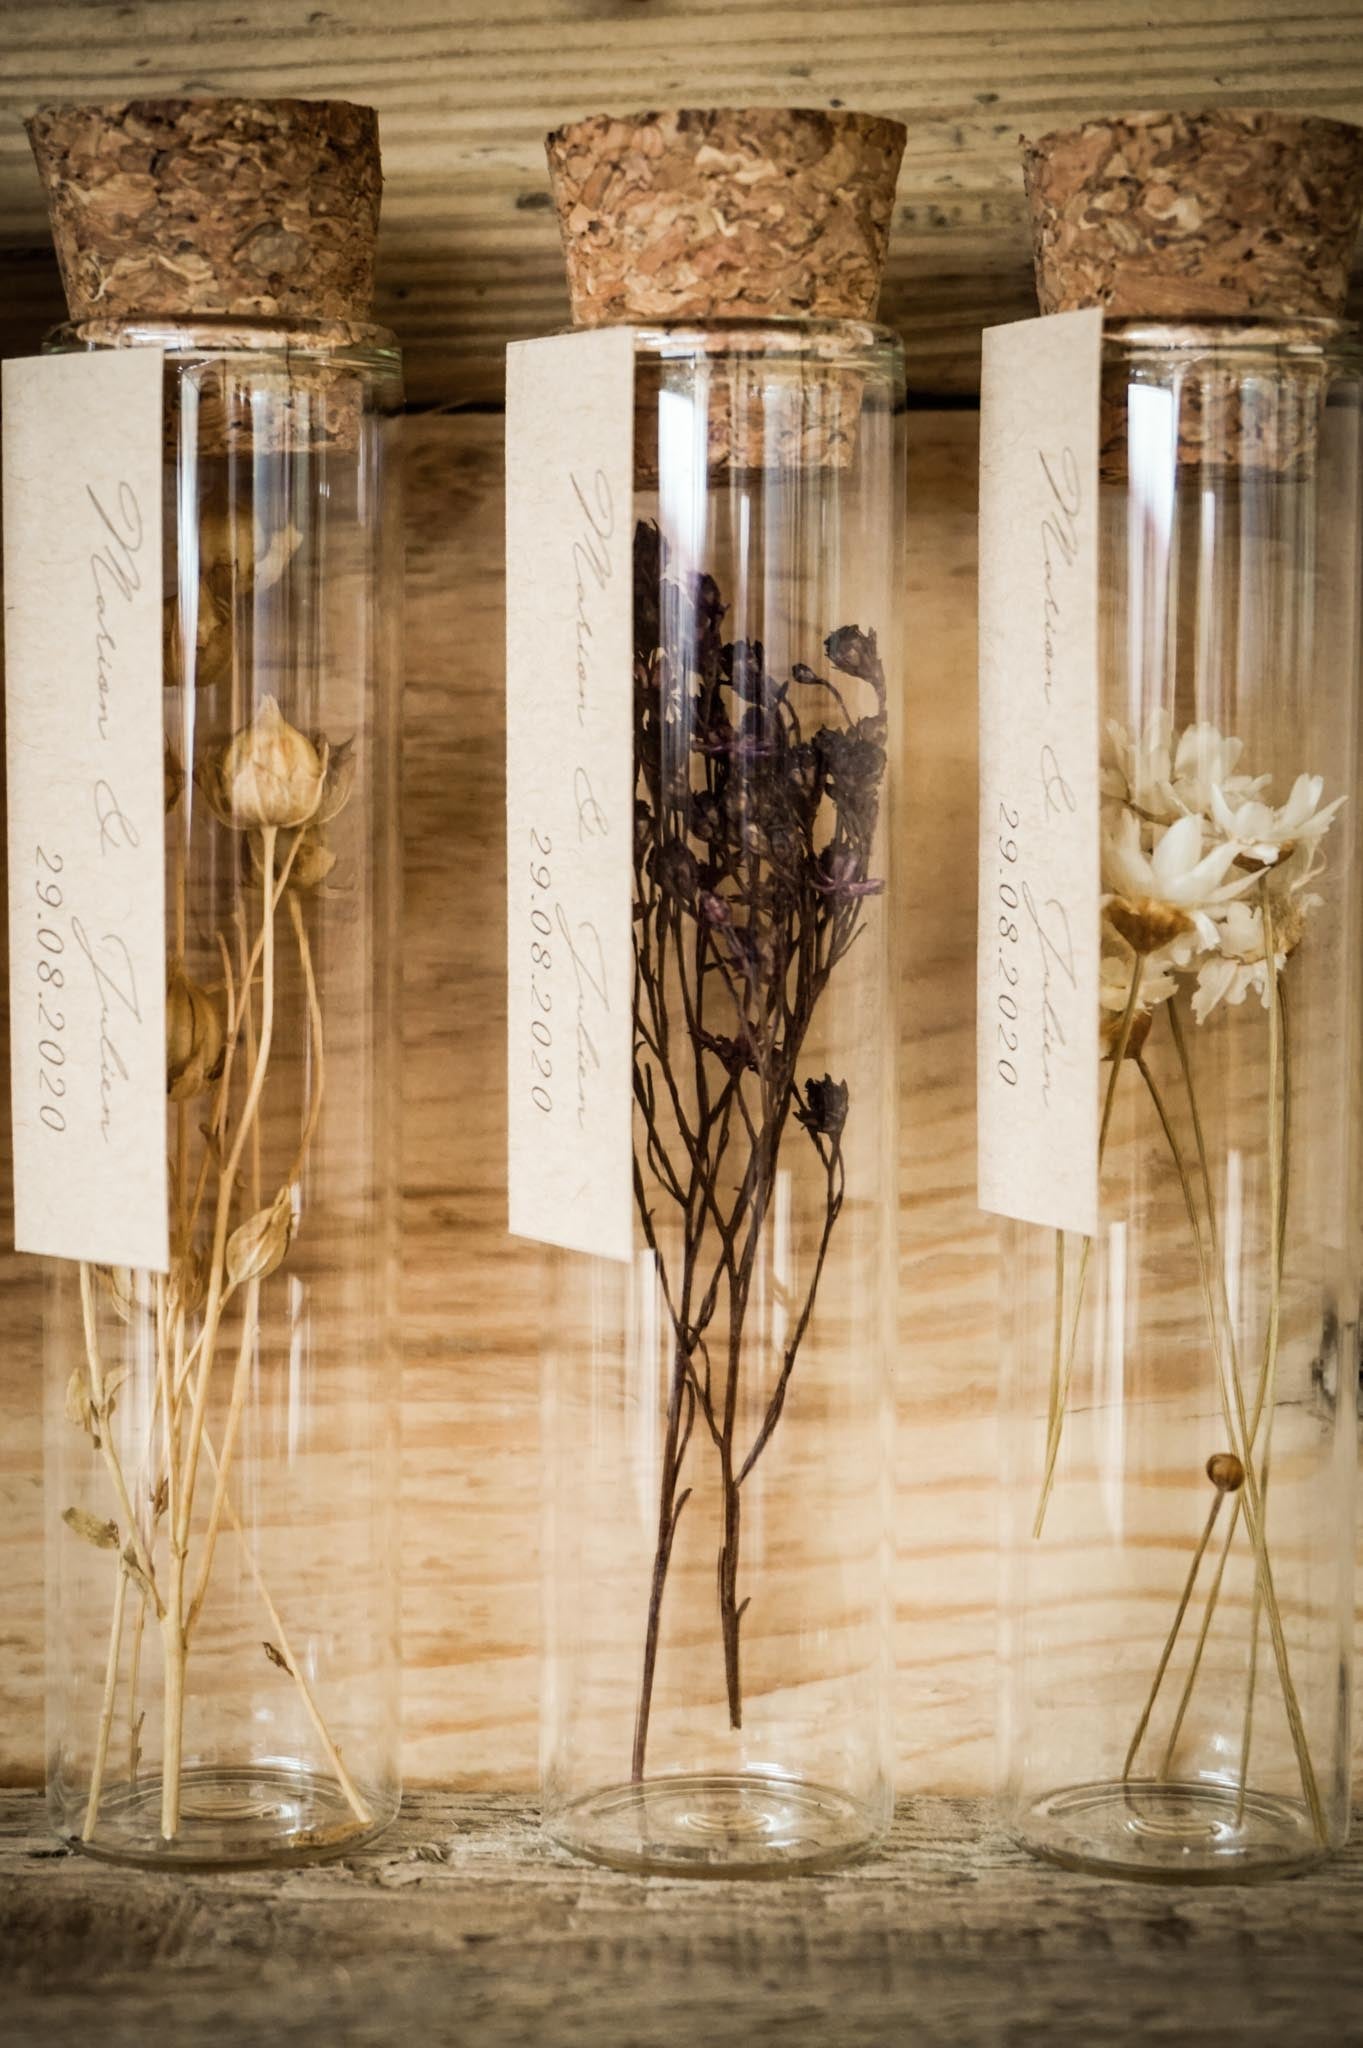 Fioles en verre fleurs séchées Ø3 H 8 à 10 cm